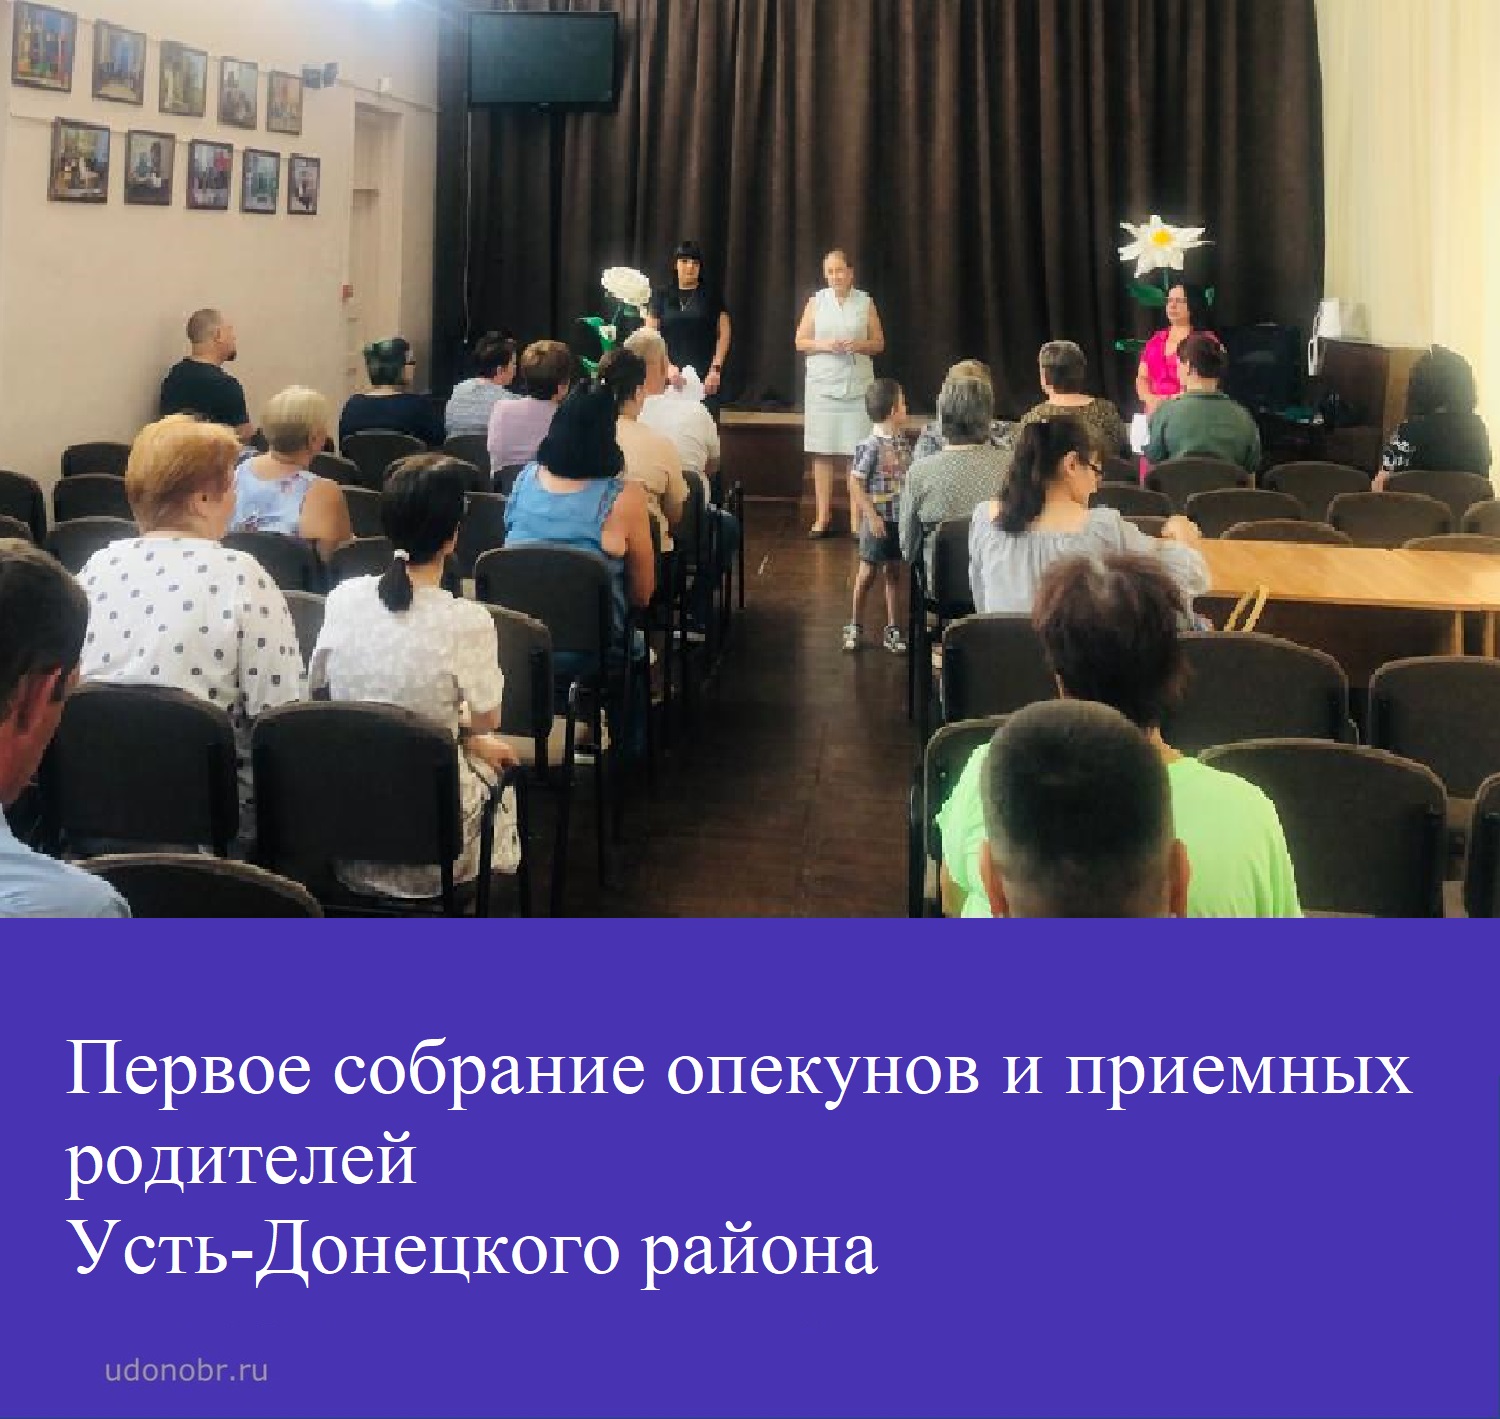 Первое собрание опекунов и приемных родителей Усть-Донецкого района